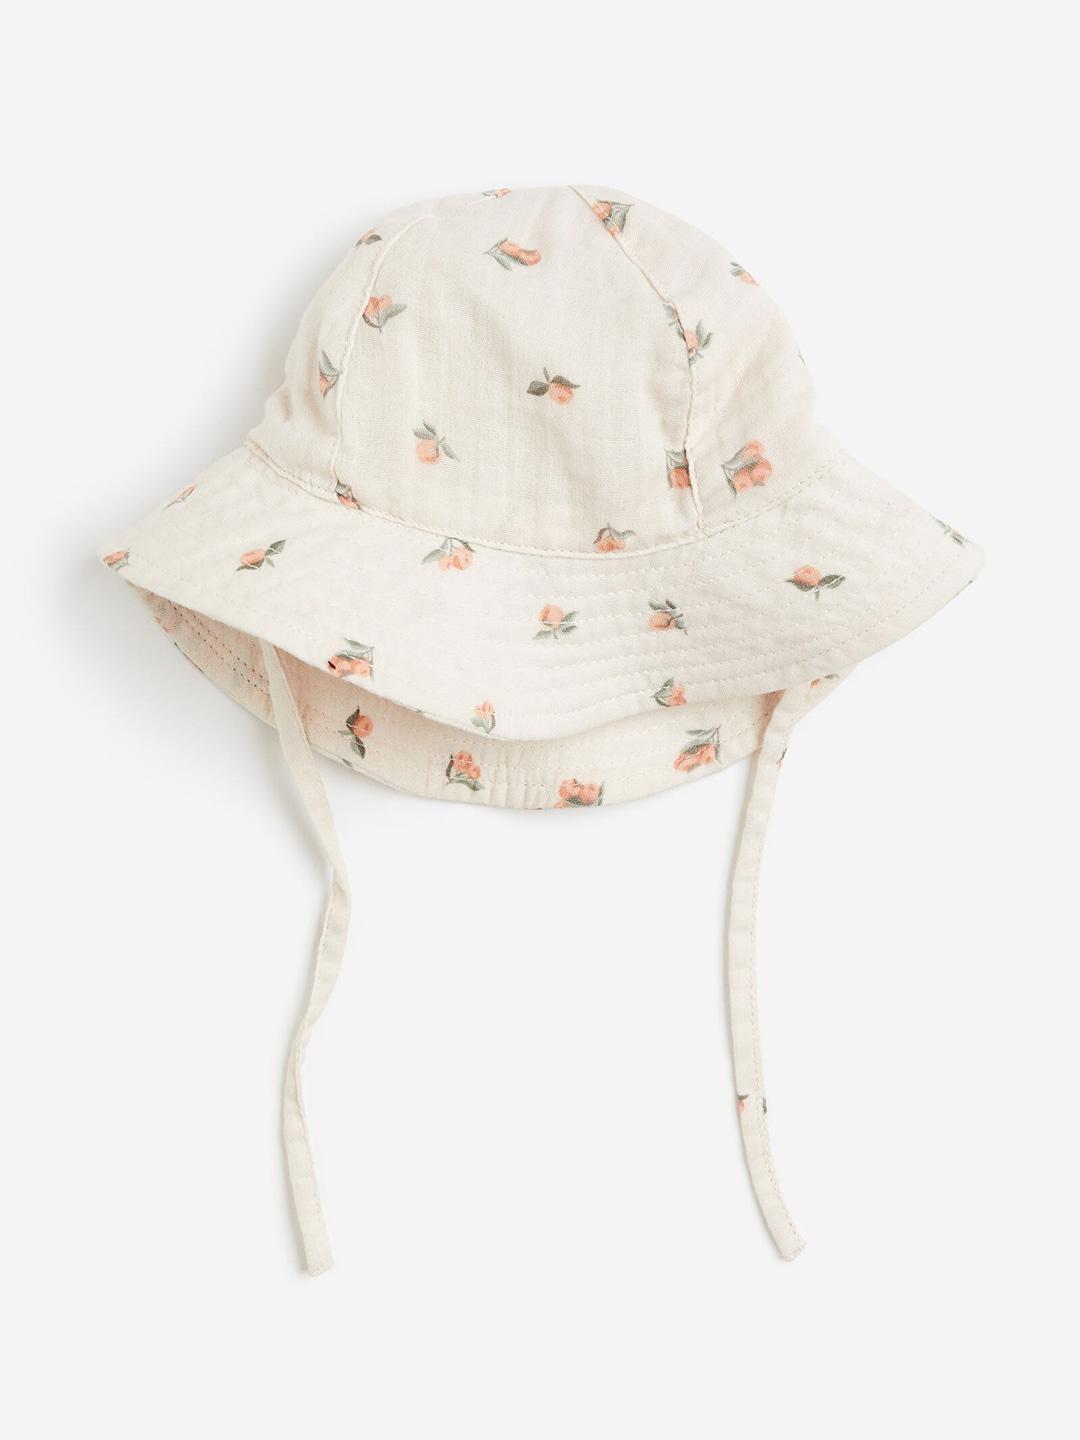 H&M Infant Boys Pure Cotton Sun Hat